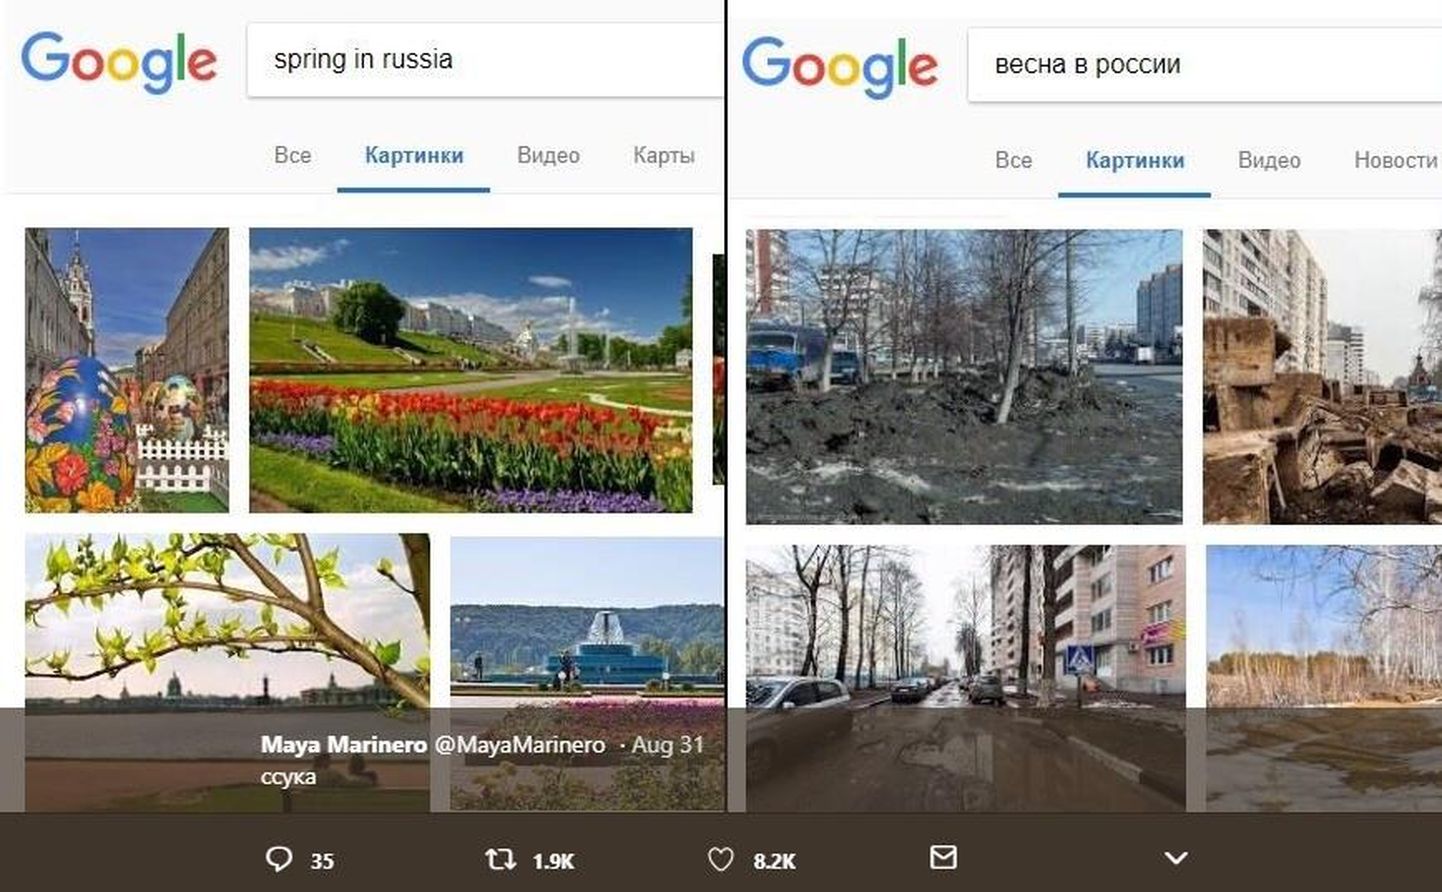 Весна в России на русском и английском языке